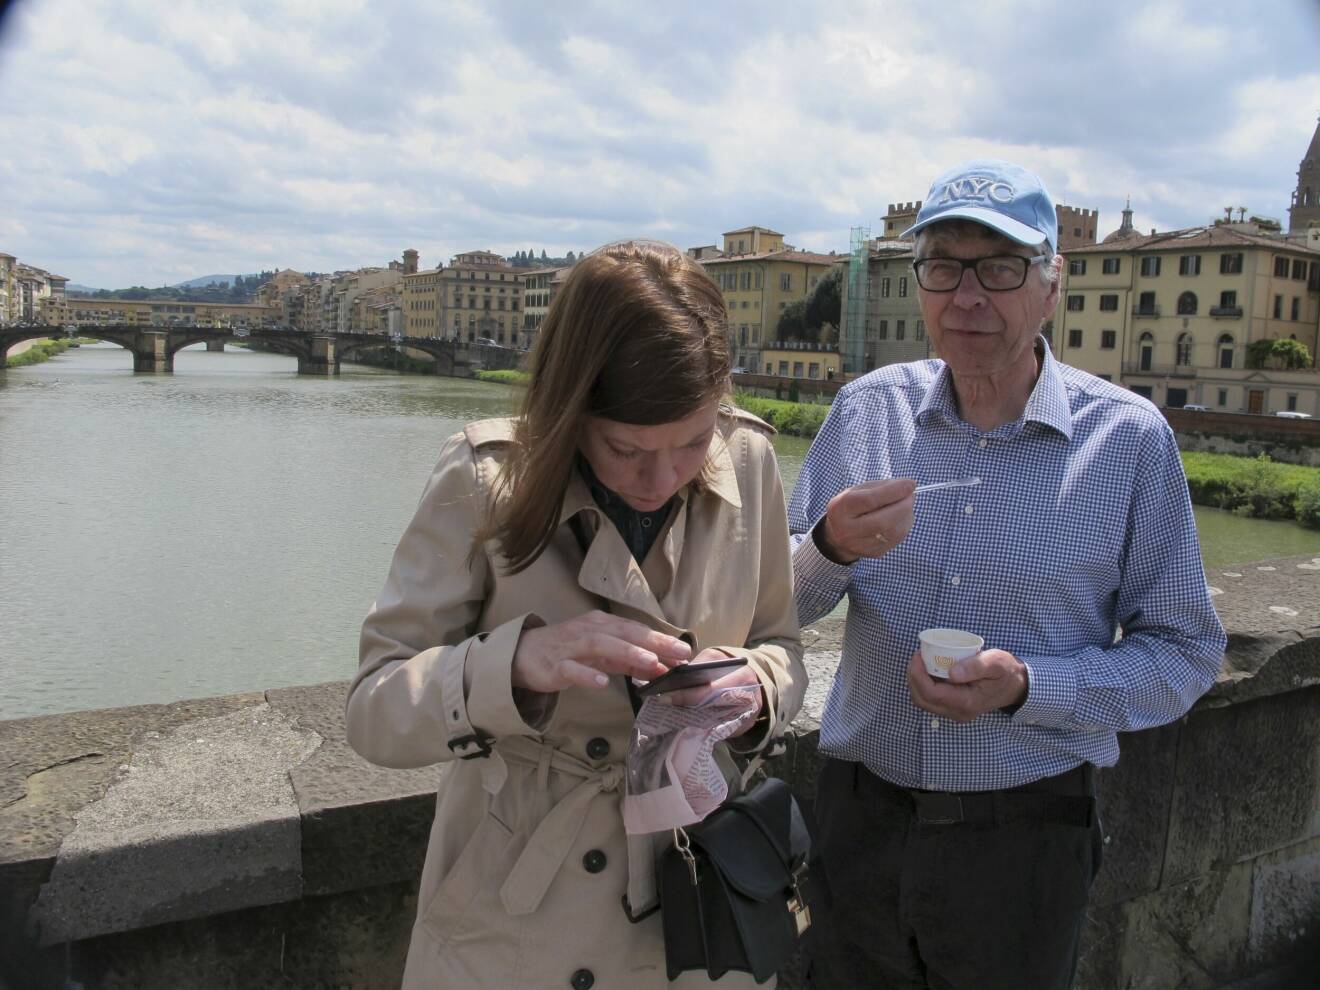 Författaren Charlotte Al-Khalili läser en karta på en bro i Florens, bredvid står hennes pappa och äter glass.